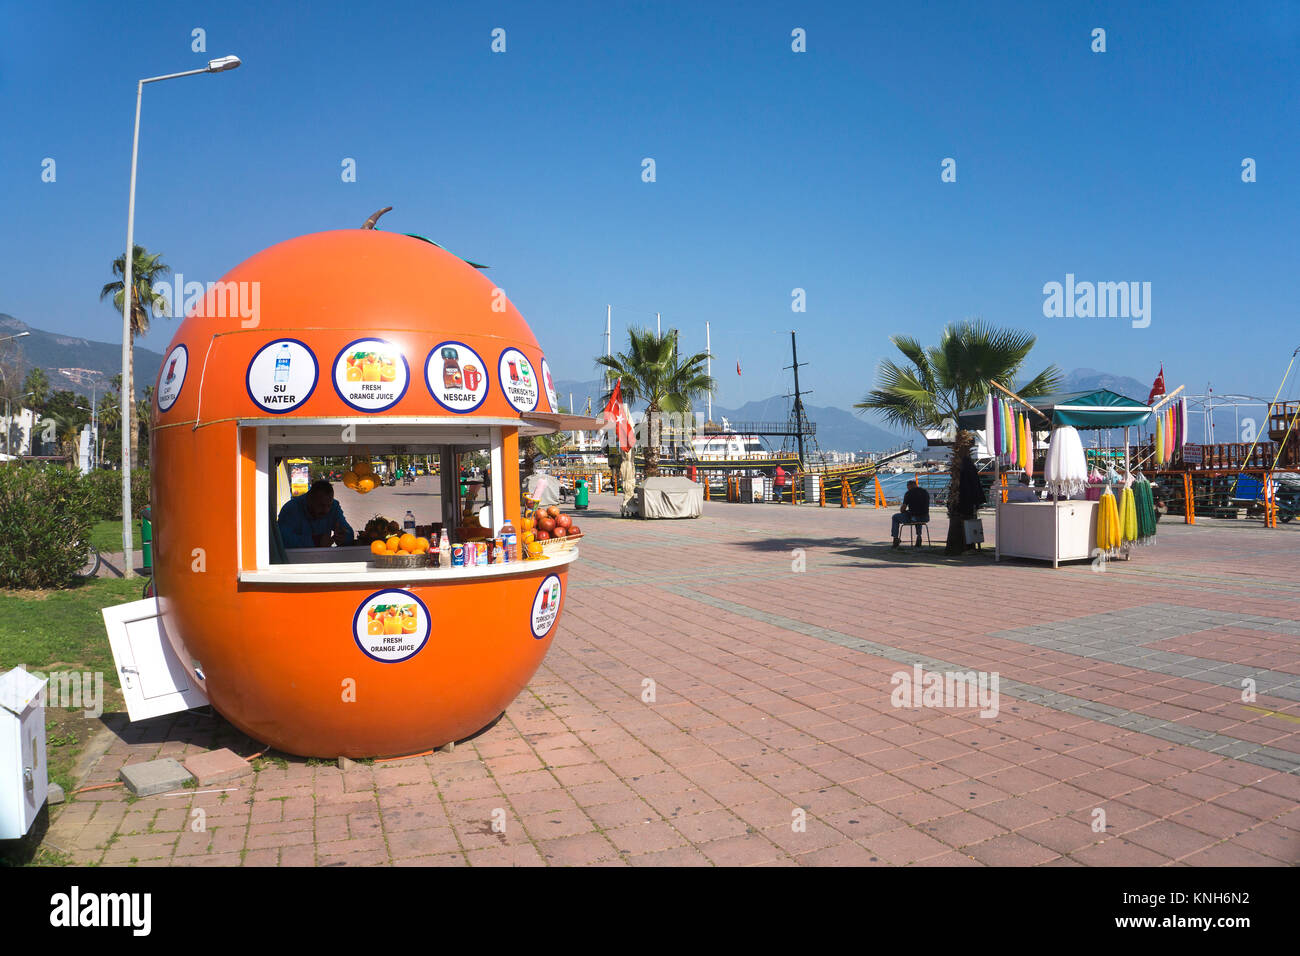 Un bar de jus de fruits la promenade du port, Alanya, Turkish riviera, Turquie Banque D'Images